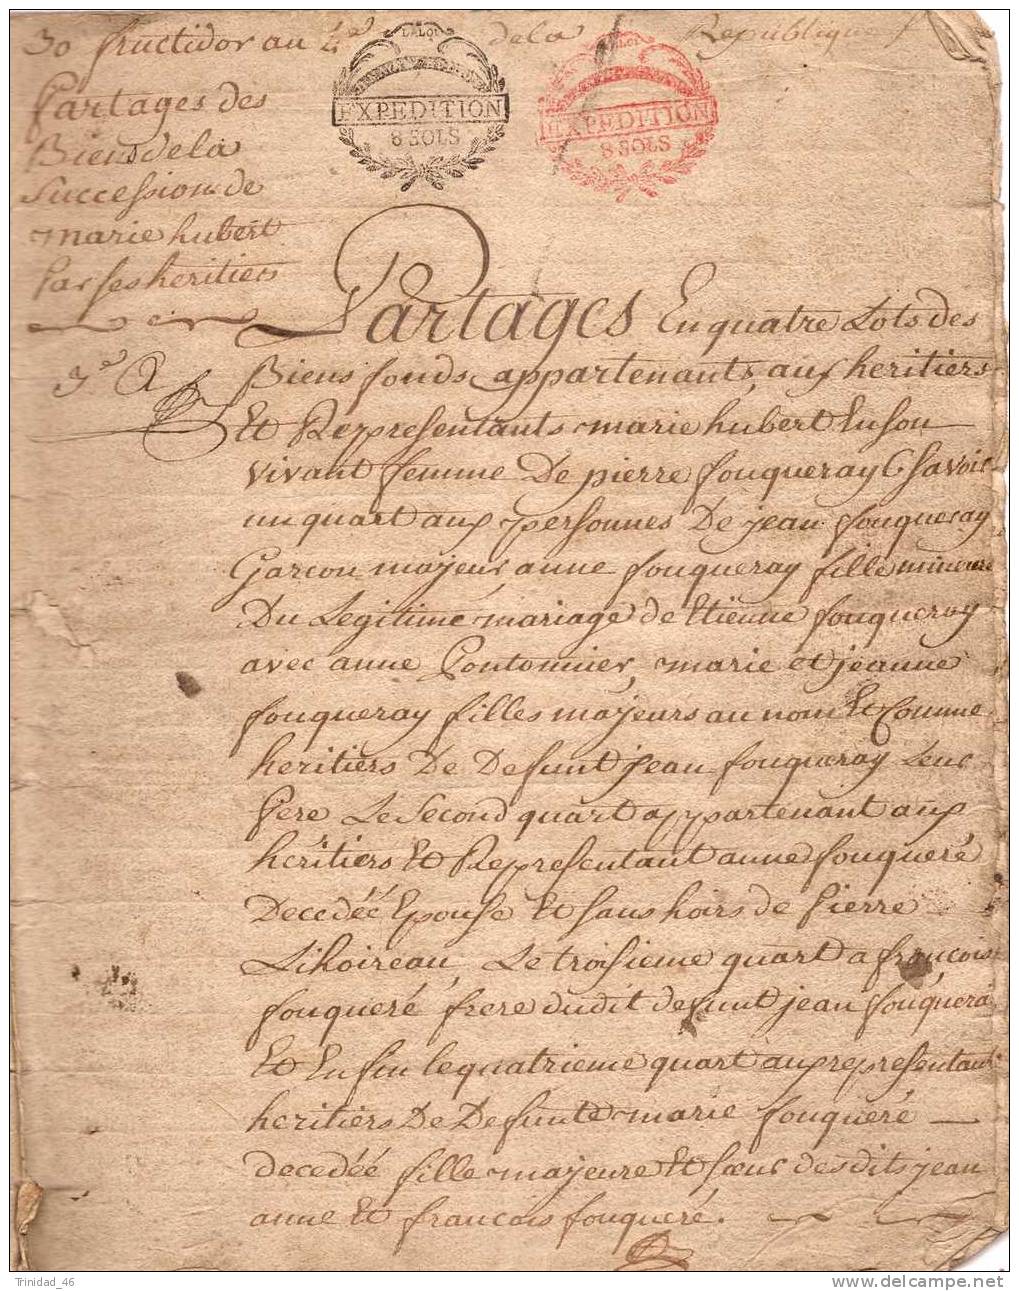 BAUGE 49  ( RARE PARCHEMIN DE 1796 )  30 FRUCTIDOR AU 4 EME DE LA REPUBLIQUE - Manuscrits